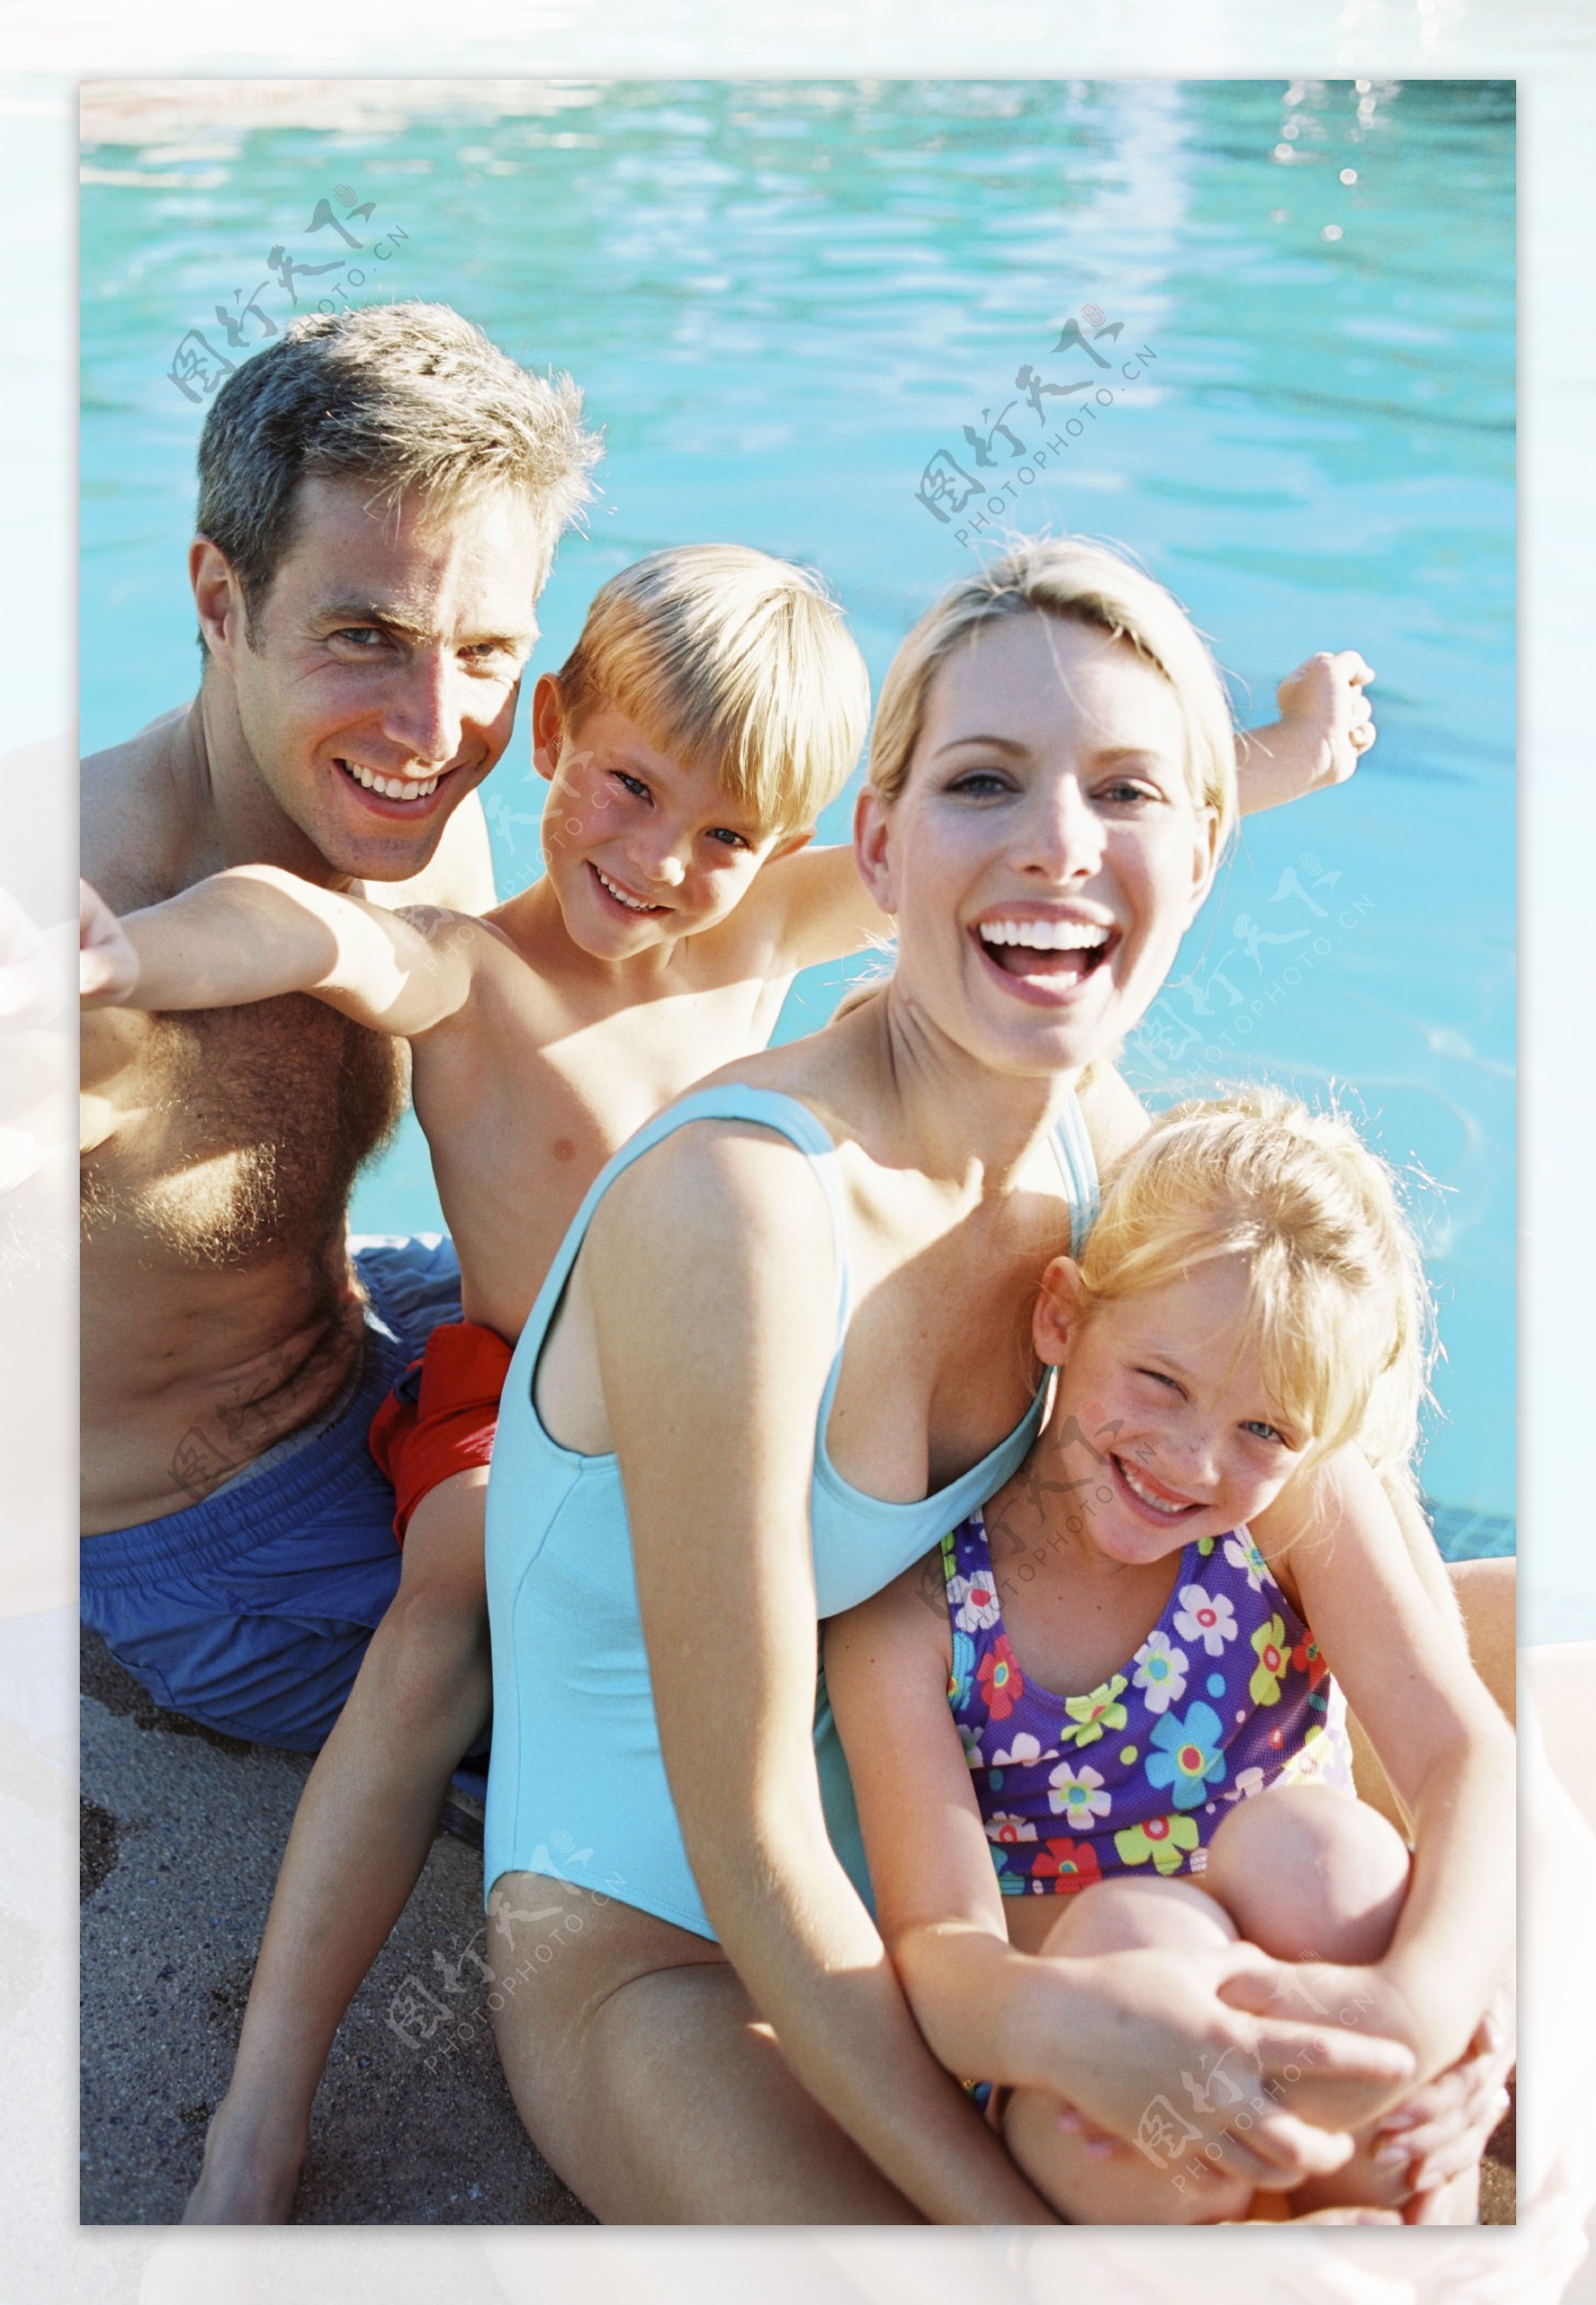 坐在泳池边的幸福家庭图片